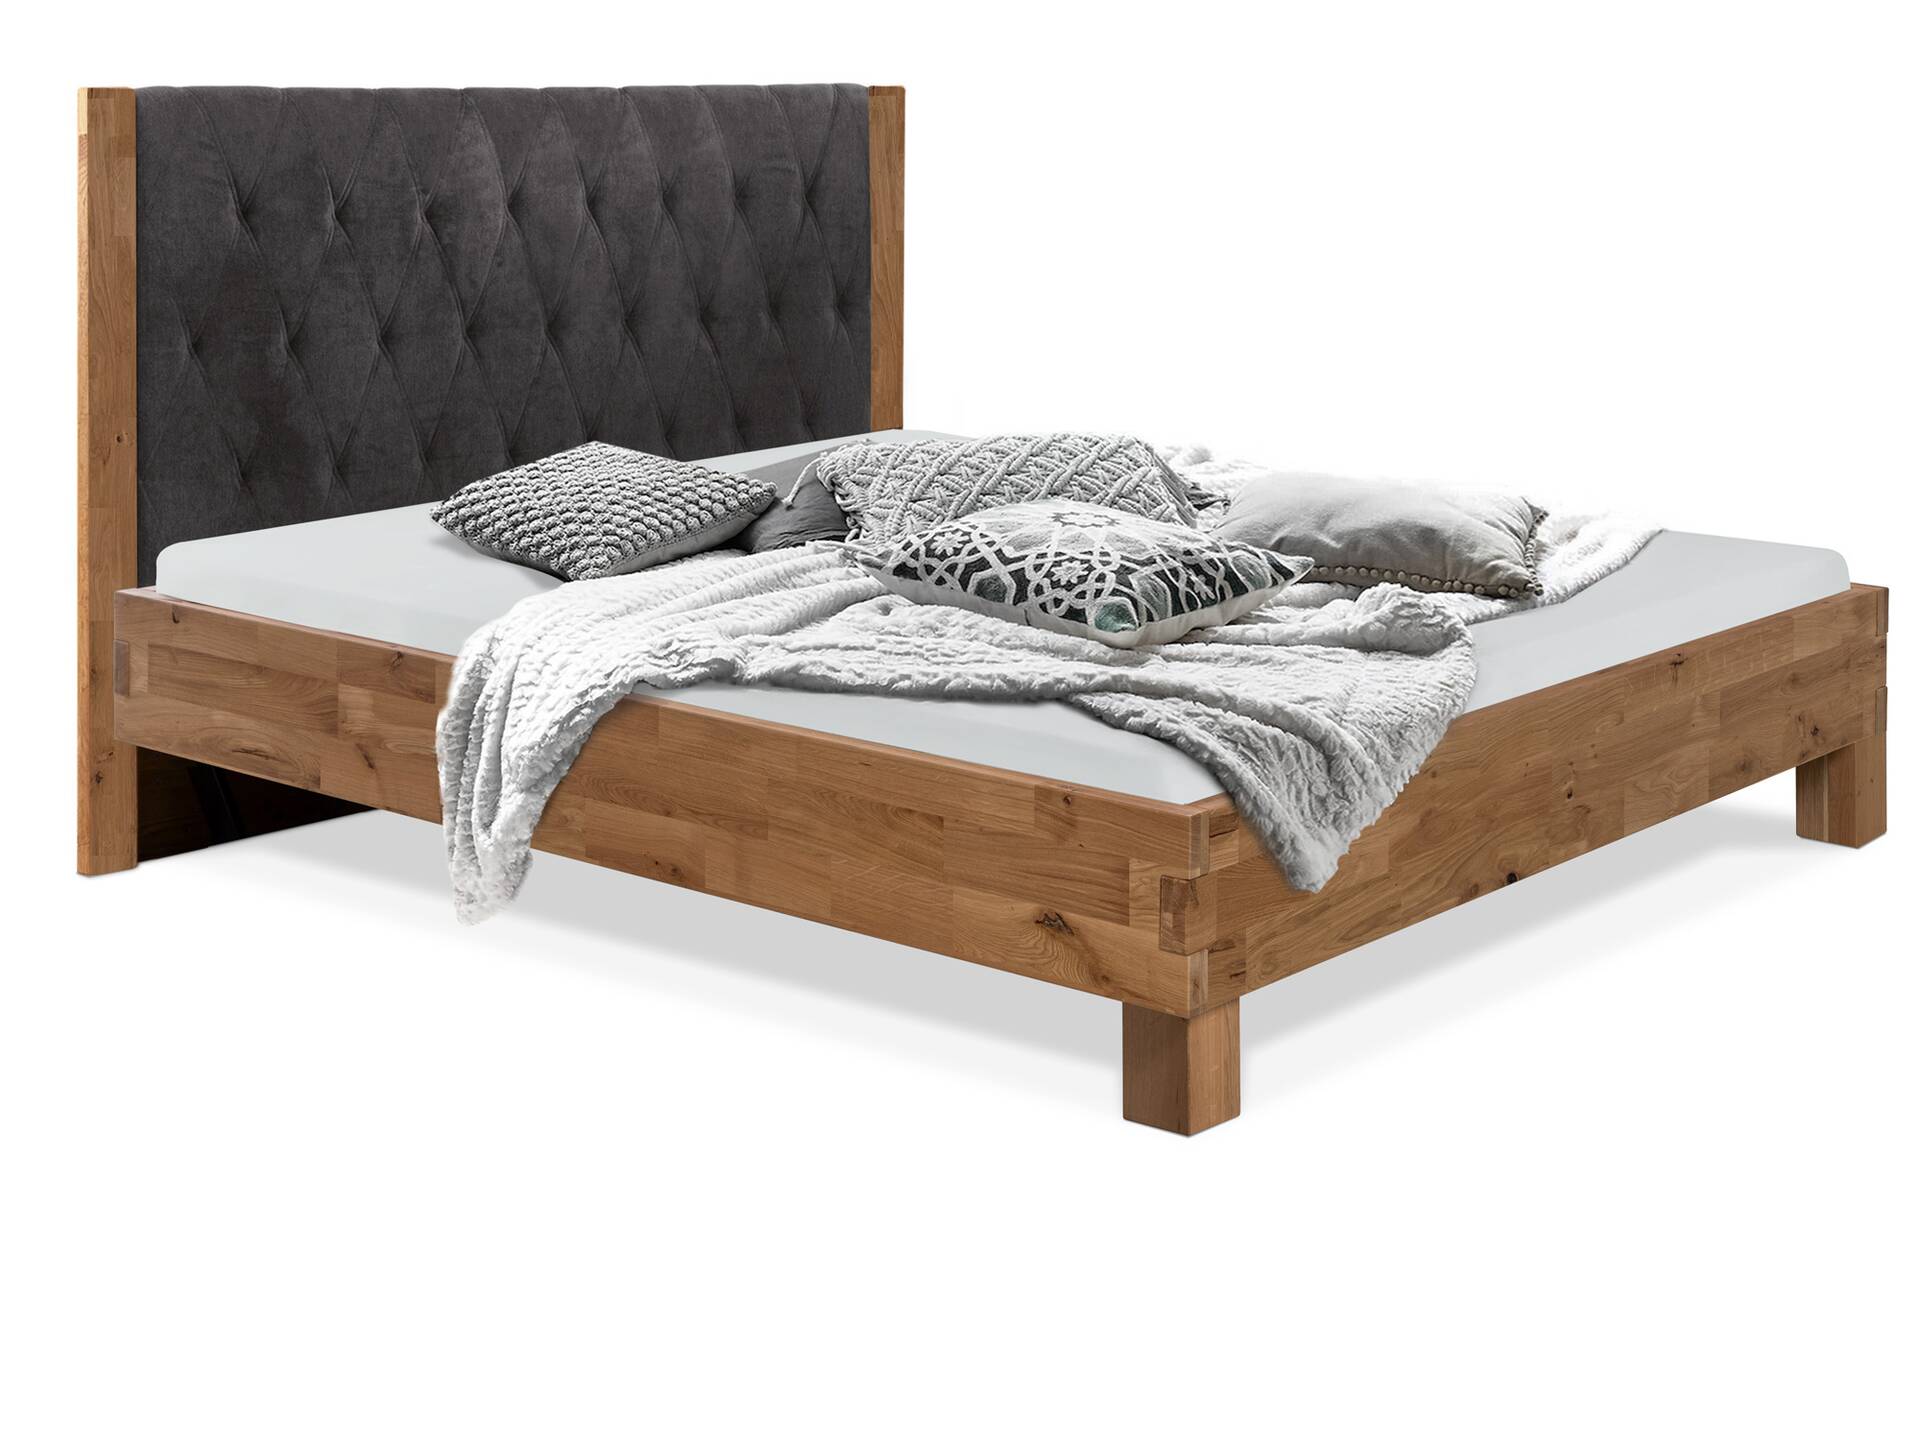 CORDINO 4-Fuß-Bett aus Eiche mit gestepptem Polster-Kopfteil, Material Massivholz 90 x 220 cm | Eiche lackiert | Stoff Anthrazit | gebürstet